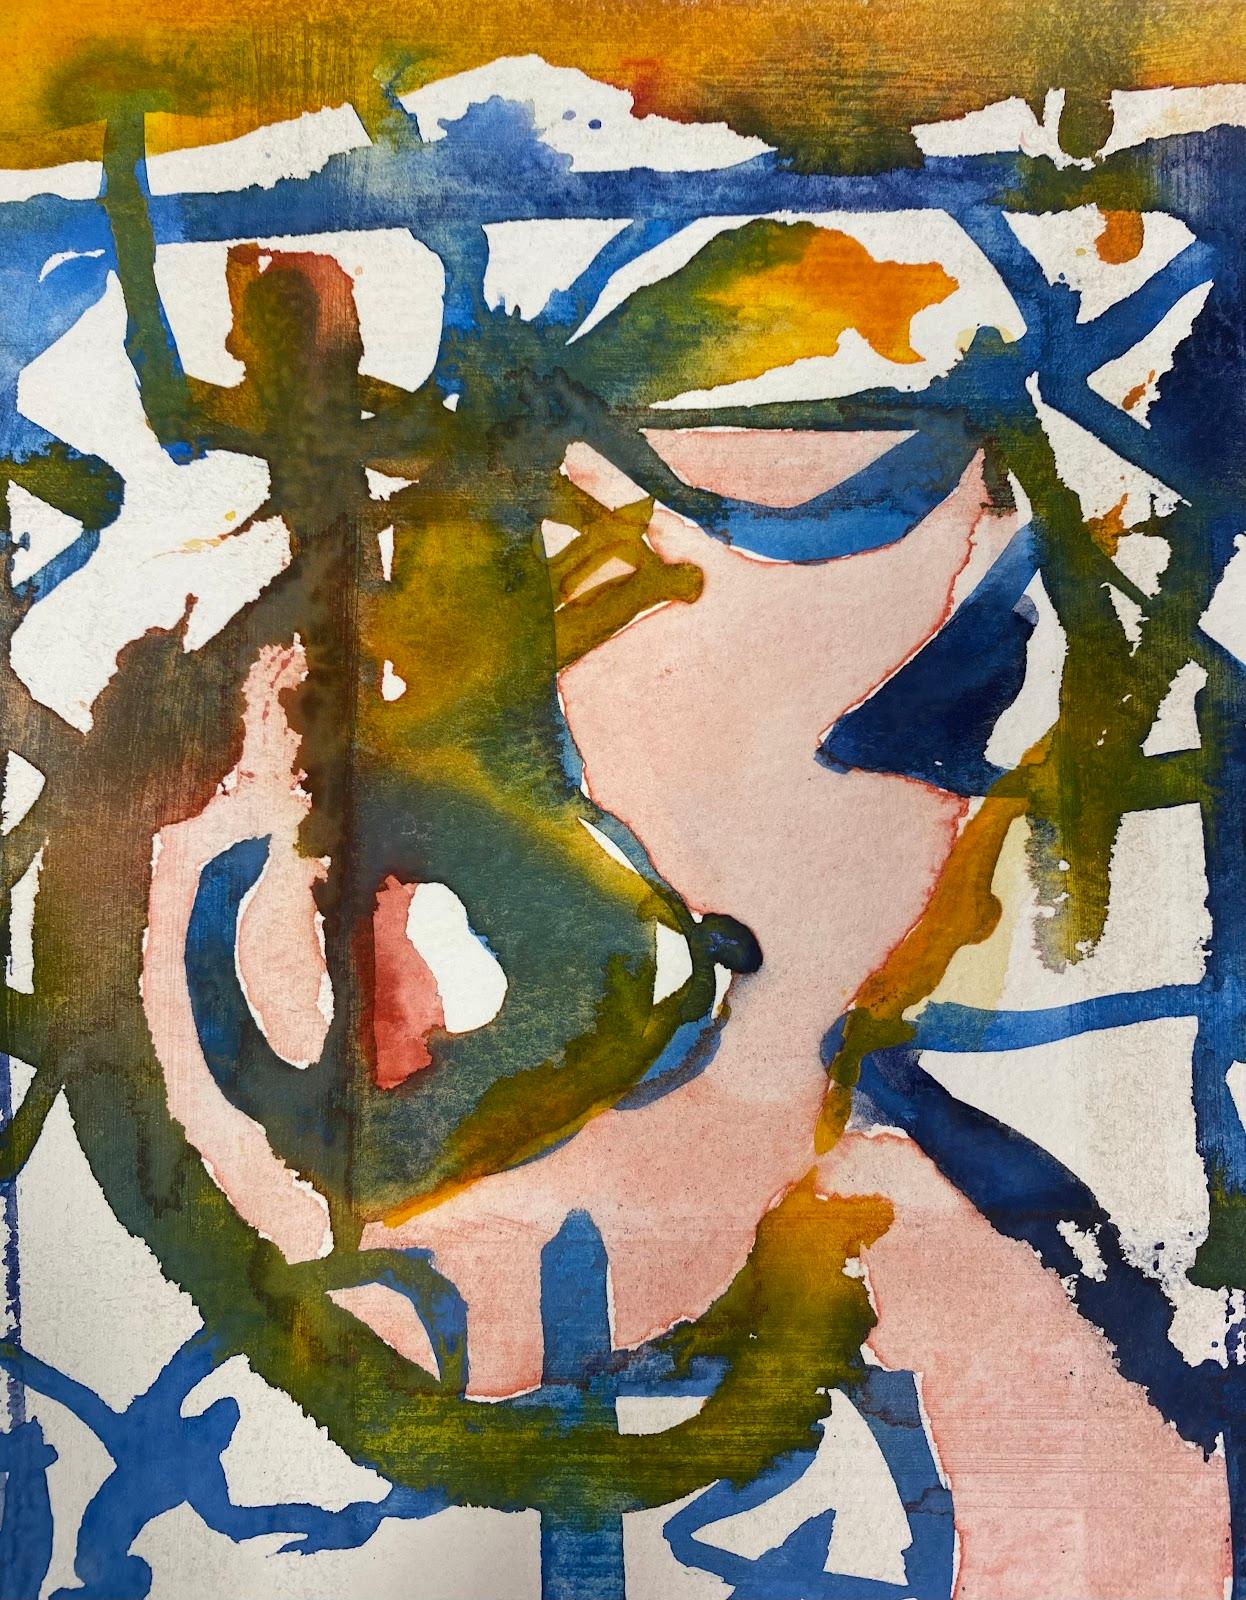 Composition expressionniste abstraite
par Jacques COULAIS (1955-2011)
peinture à la gouache sur carton
sans cadre : 7.75 x 7.75 pouces
état : excellent
provenance : tous les tableaux de cet artiste que nous avons en vente proviennent du Studio de